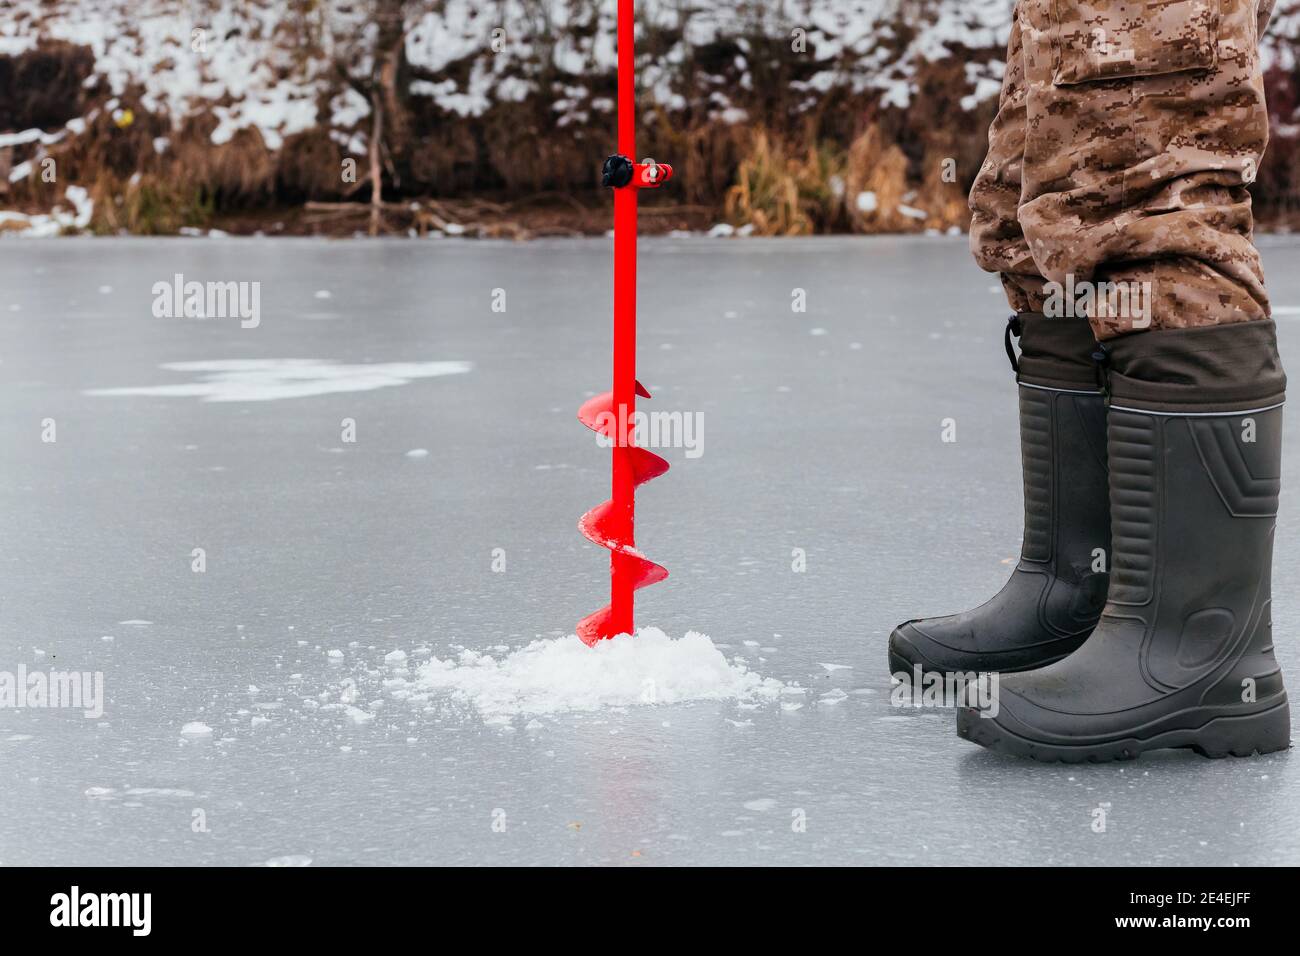 Pêcheur sans visage forant un trou avec une vis de glace pour la pêche sur glace. Pêche d'hiver. Homme jambes dans des bottes et glace vis sur fond de glace Banque D'Images